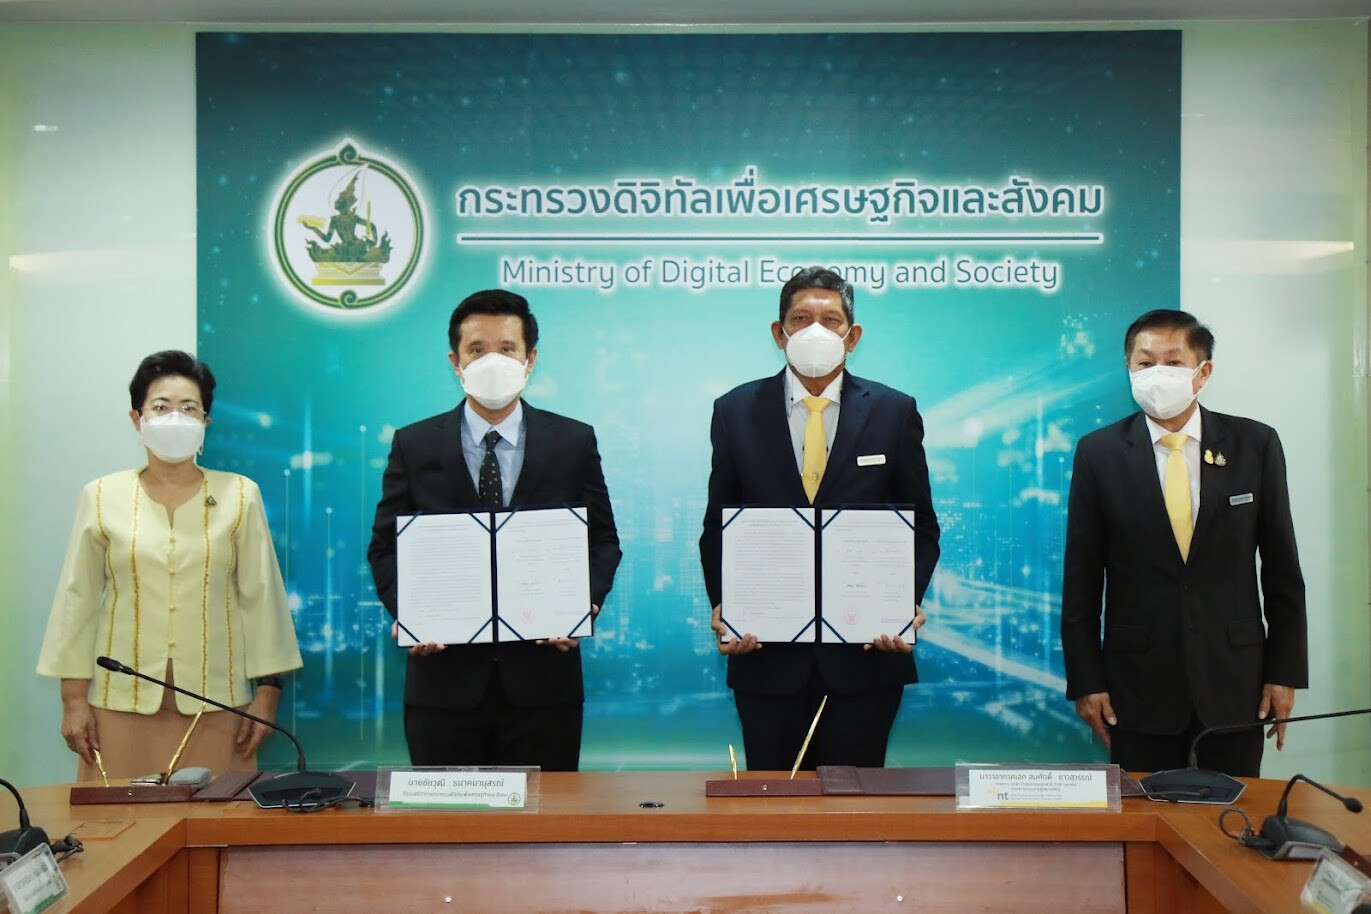 ดีอีเอส ลงนามสัญญามอบสิทธิ NT บริหารไทยคมหลังหมดสัมปทาน